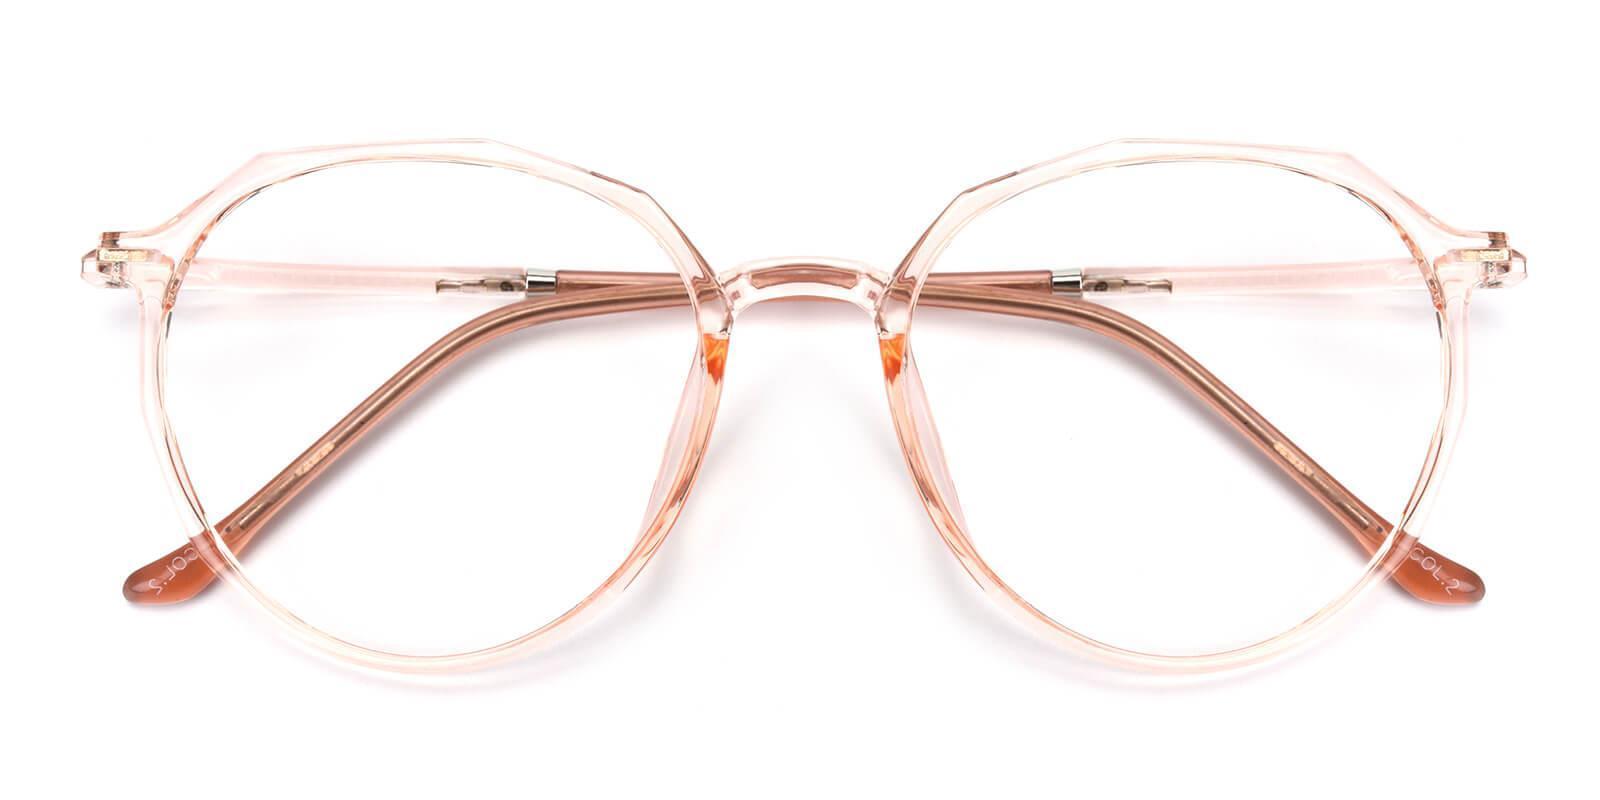 Cheap Glasses Online Prescription from 1, Inexpensive Eyeglasses